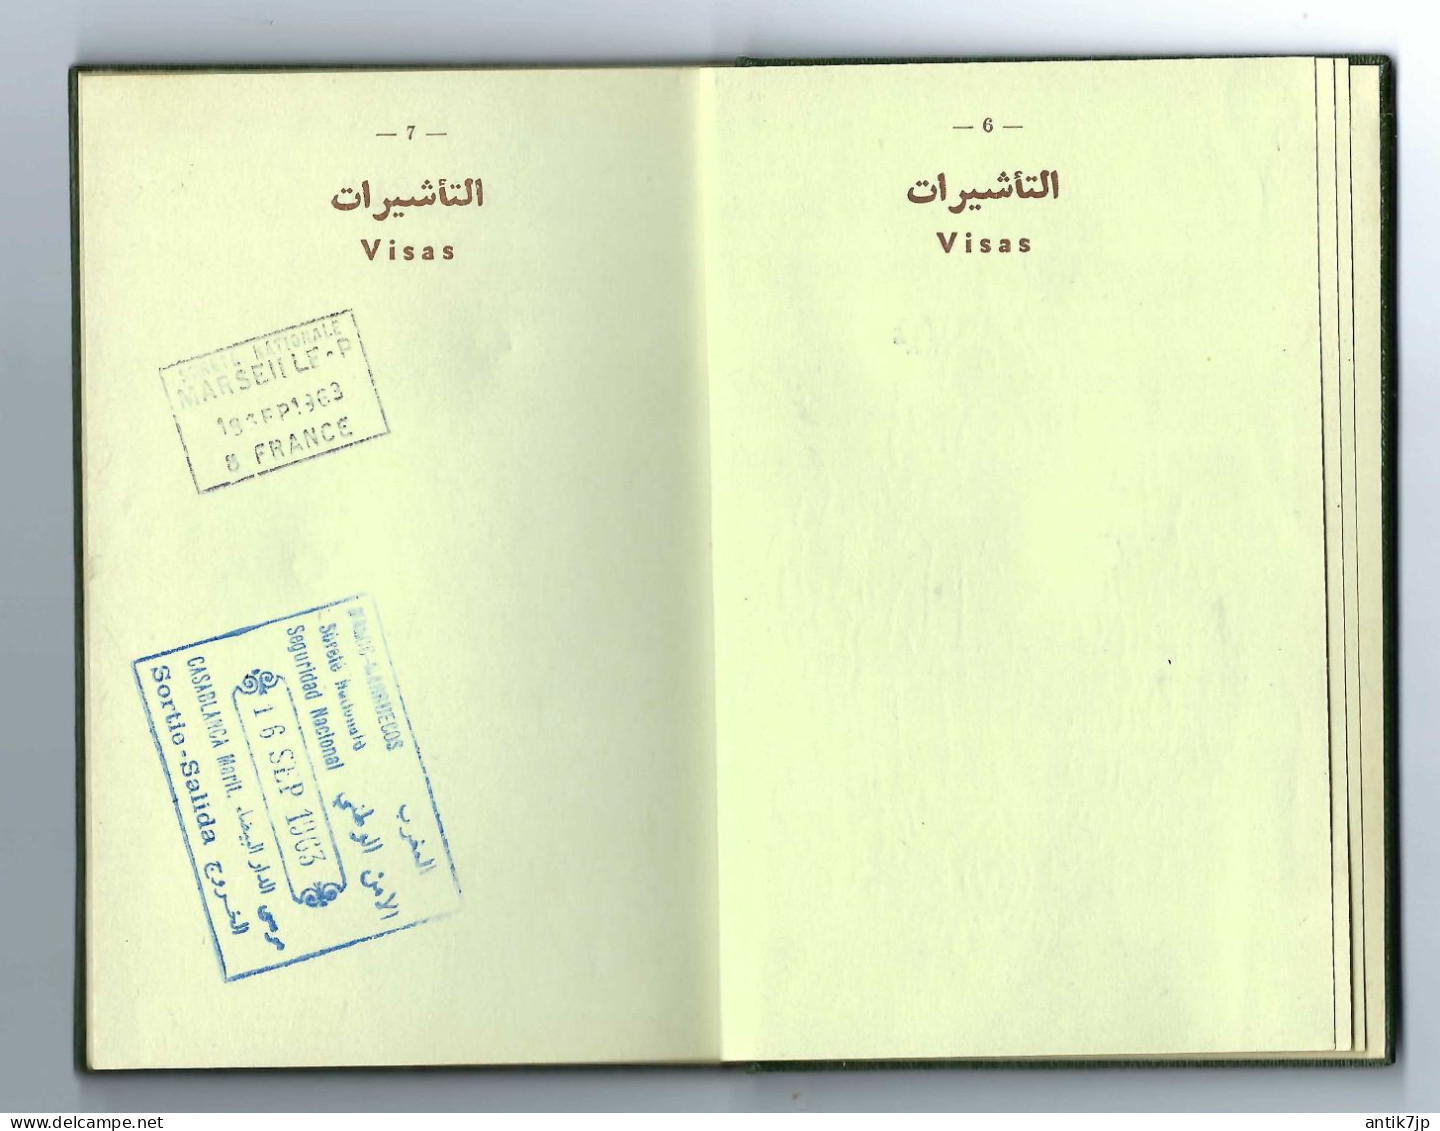 MOROCCO PASSPORT ROYAUME DU MAROC PASSEPORT VISA STAMP 1960s - Historische Documenten